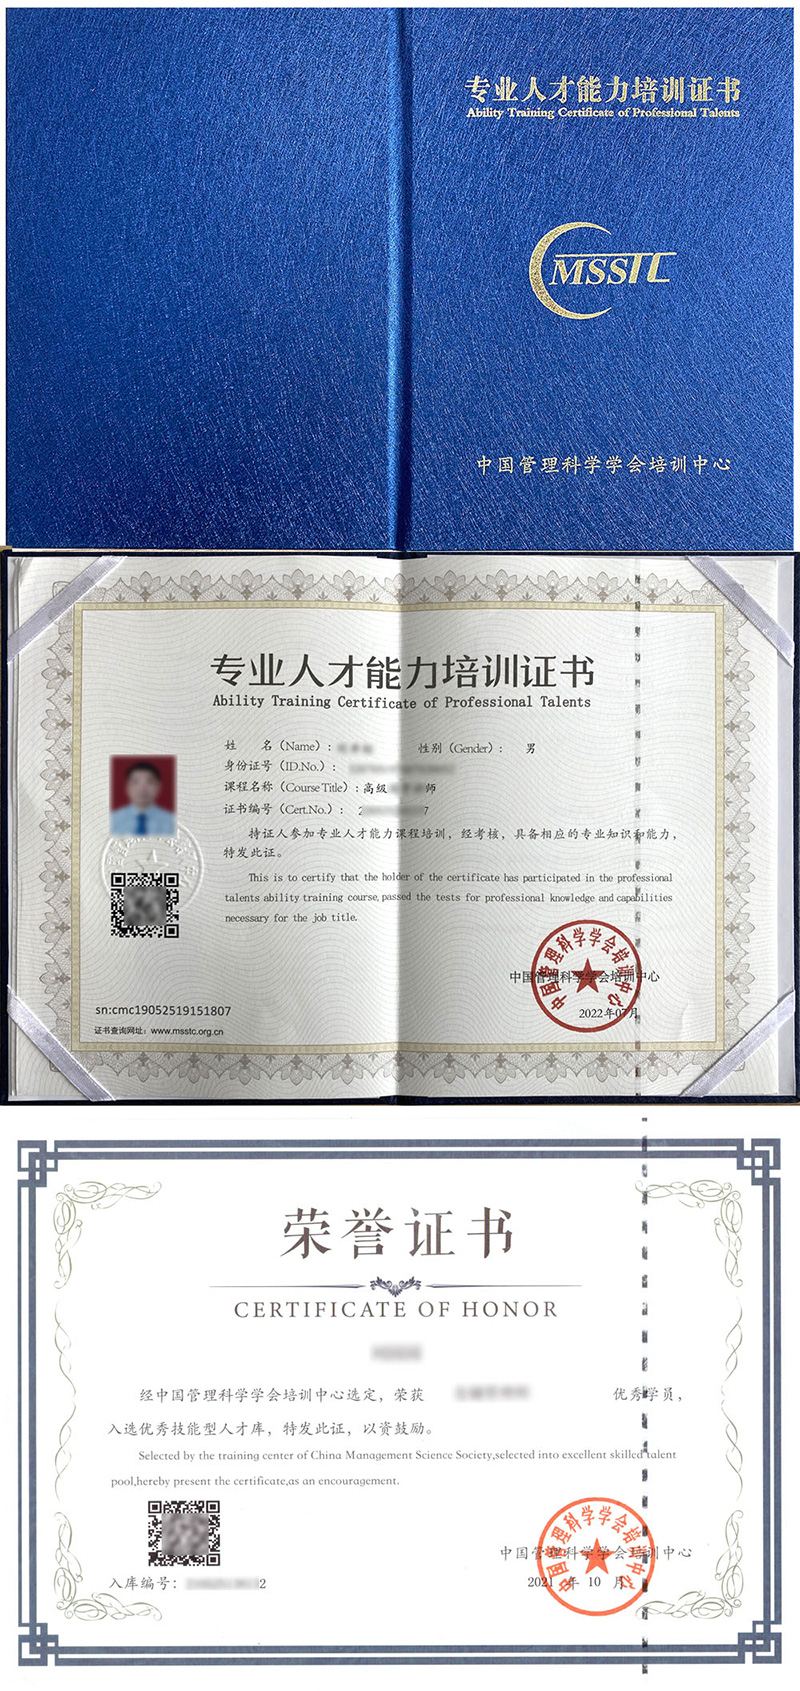 中国管理科学学会培训中心 专业人才能力培训证书 茶艺实训师证证书样本